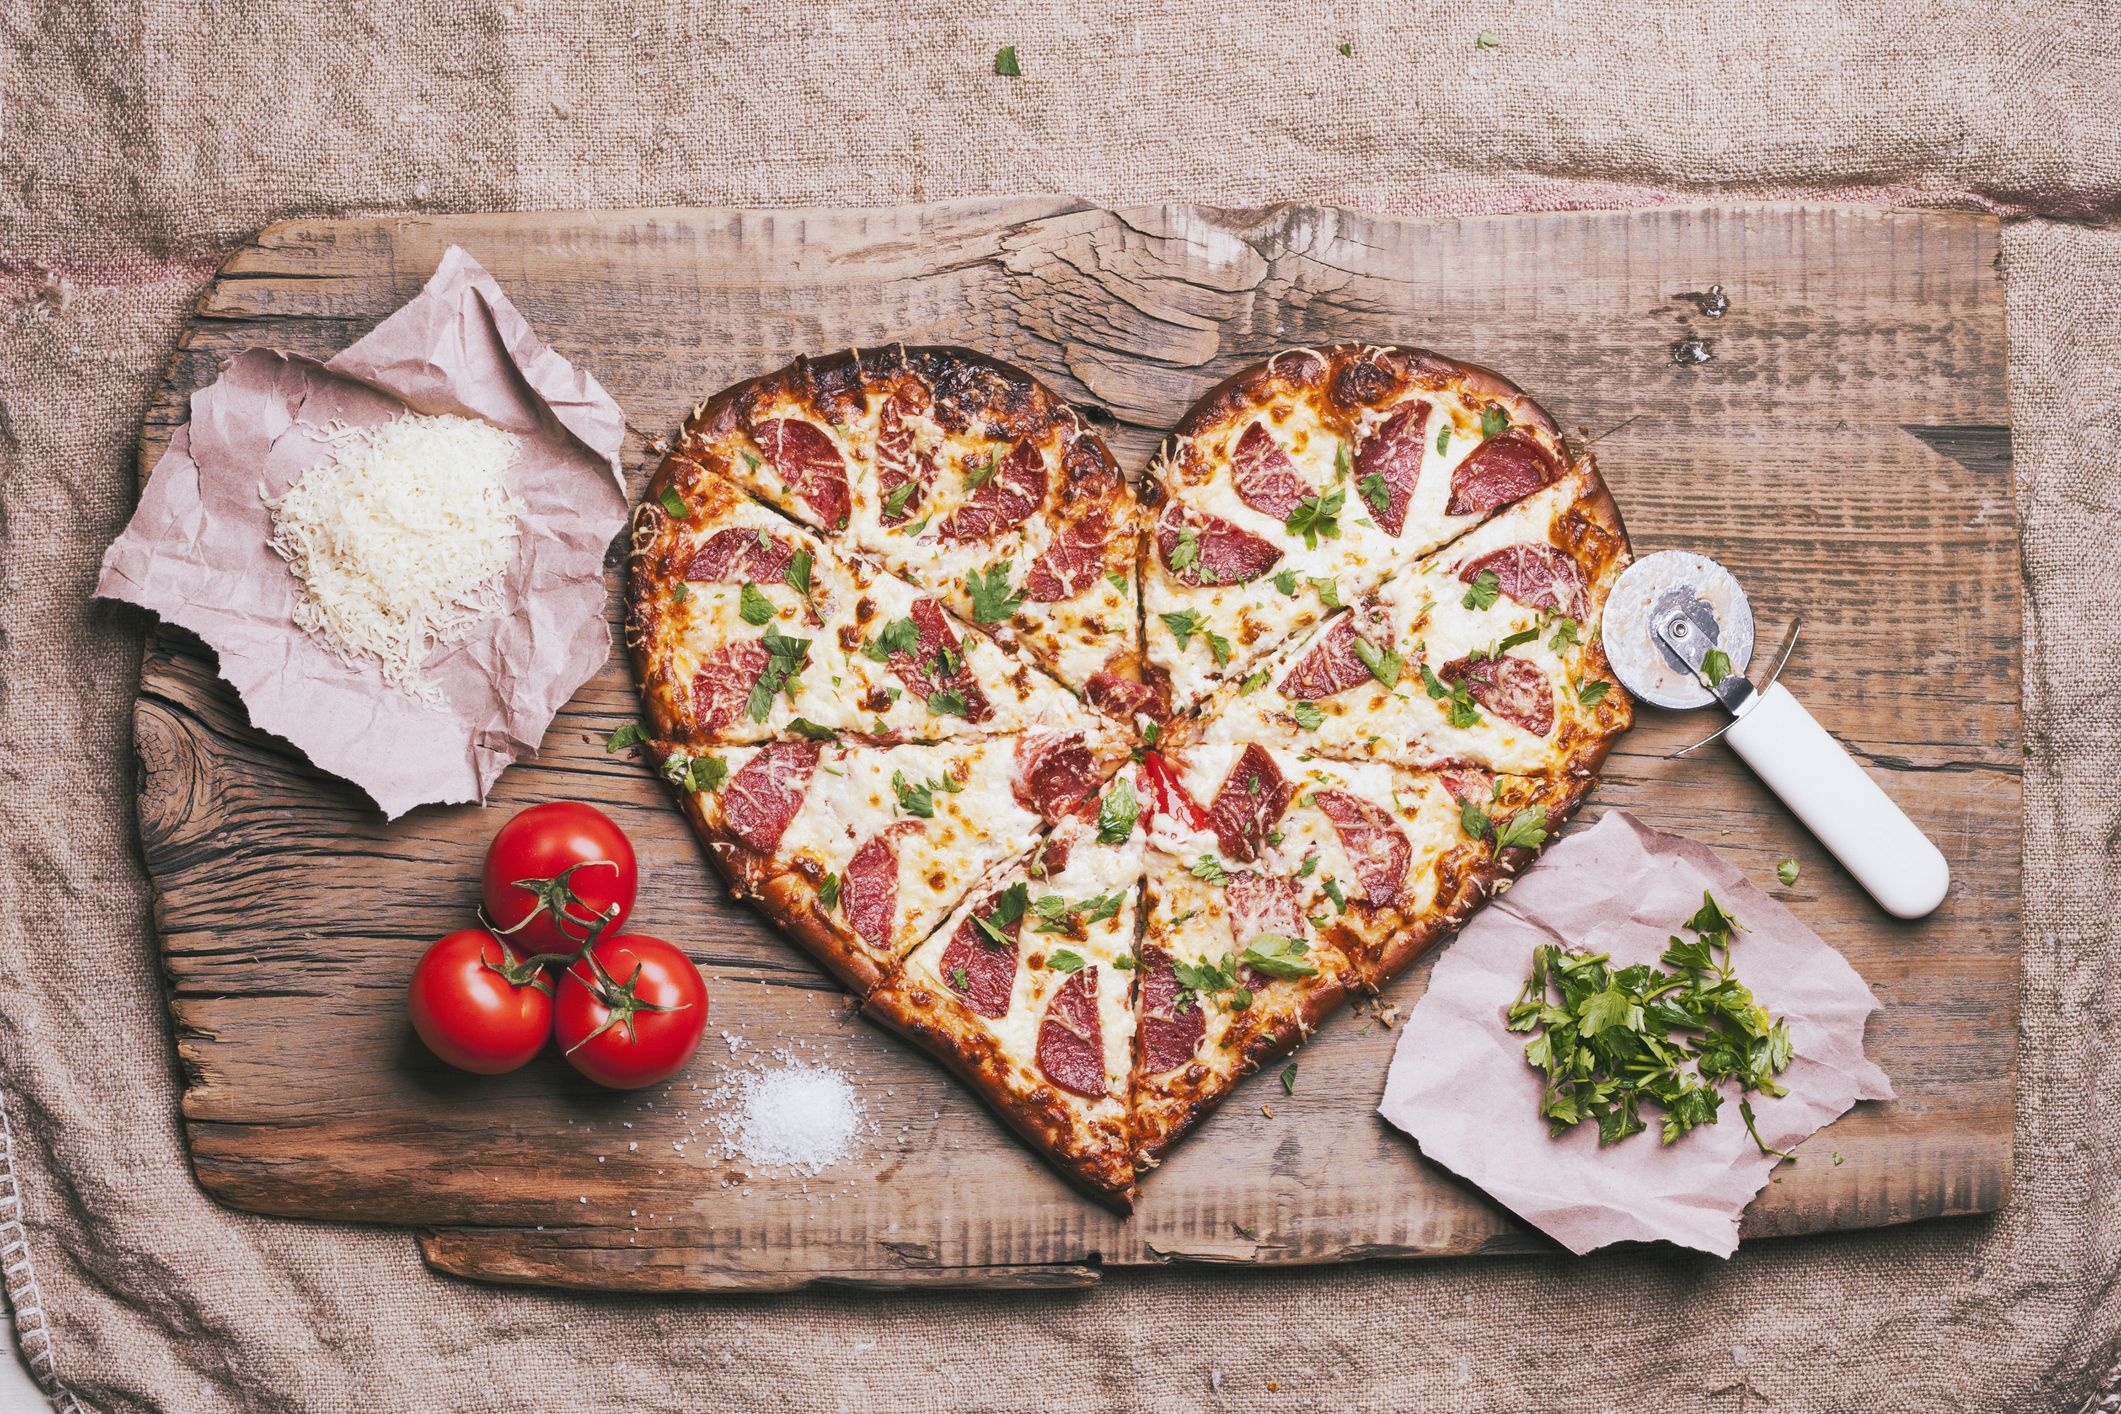 Heart shape, heart-shaped foods, valentine's day, 2130x1420 HD Desktop